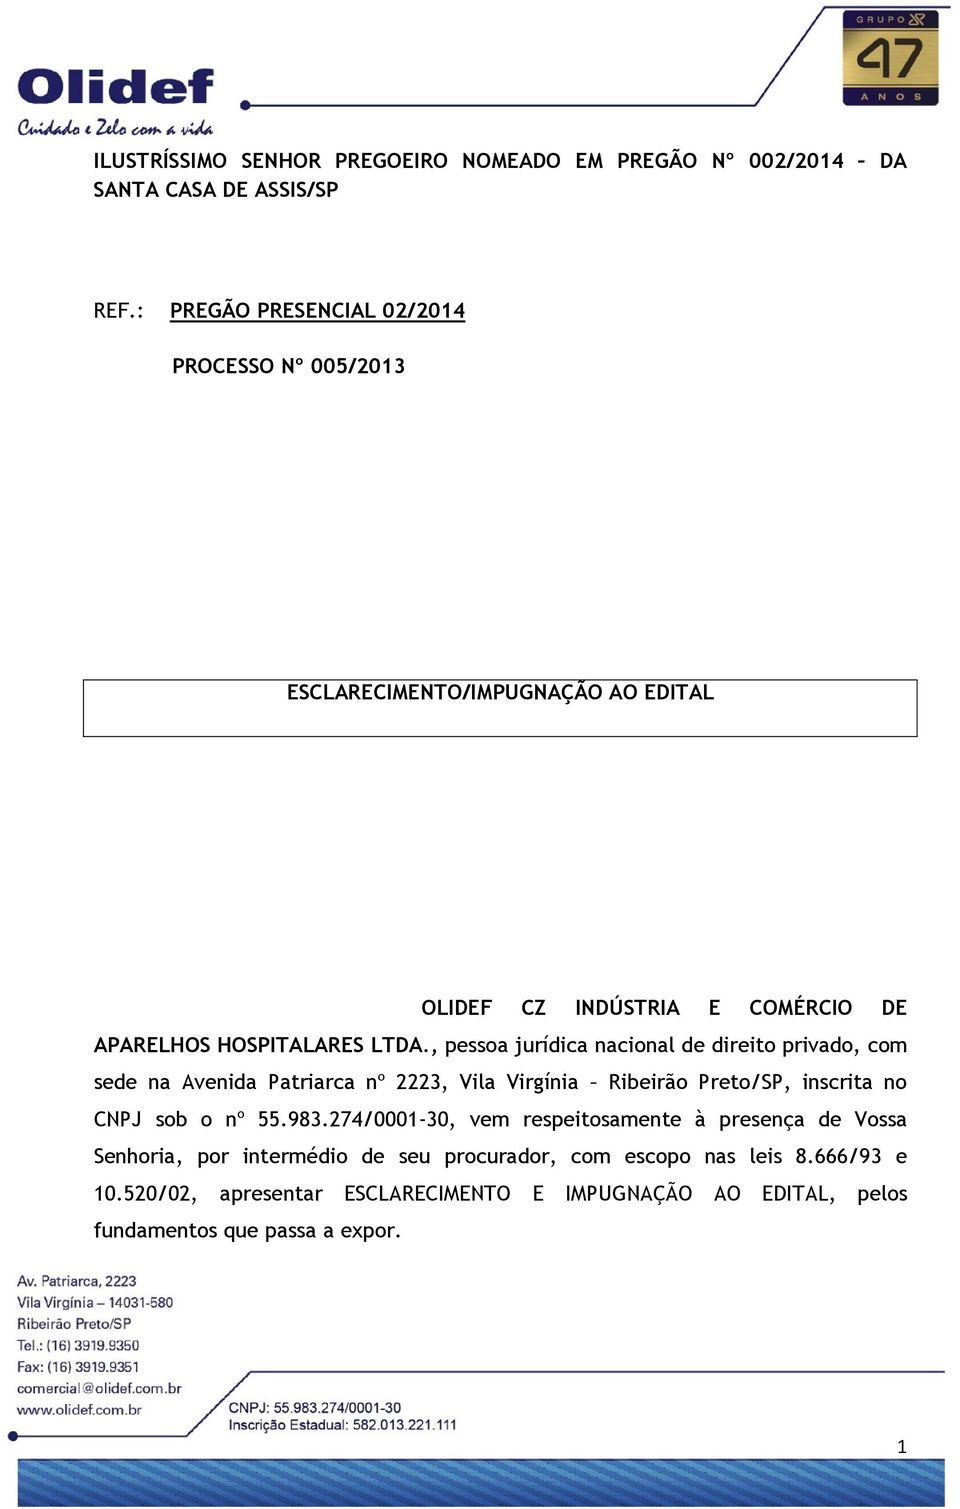 , pessoa jurídica nacional de direito privado, com sede na Avenida Patriarca nº 2223, Vila Virgínia Ribeirão Preto/SP, inscrita no CNPJ sob o nº 55.983.